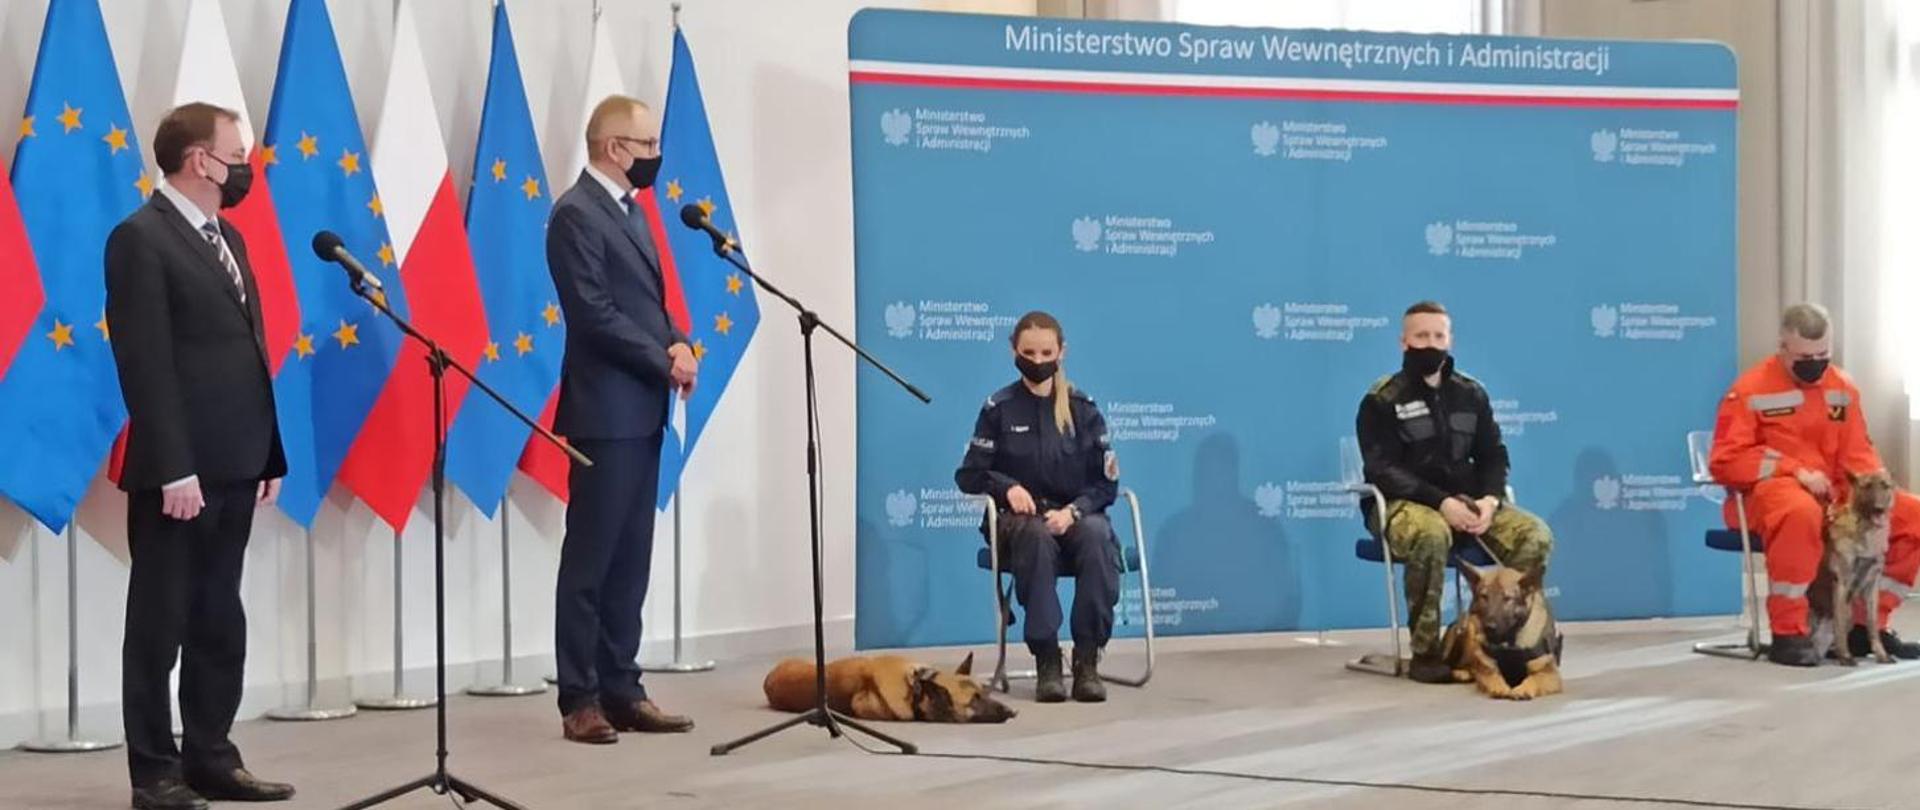 Konferencja prasowa ministra MSWiA. Na zdjęciu przedstawiciele służb ratowniczych siedzą na krzesłach a koło nich leżą psy.